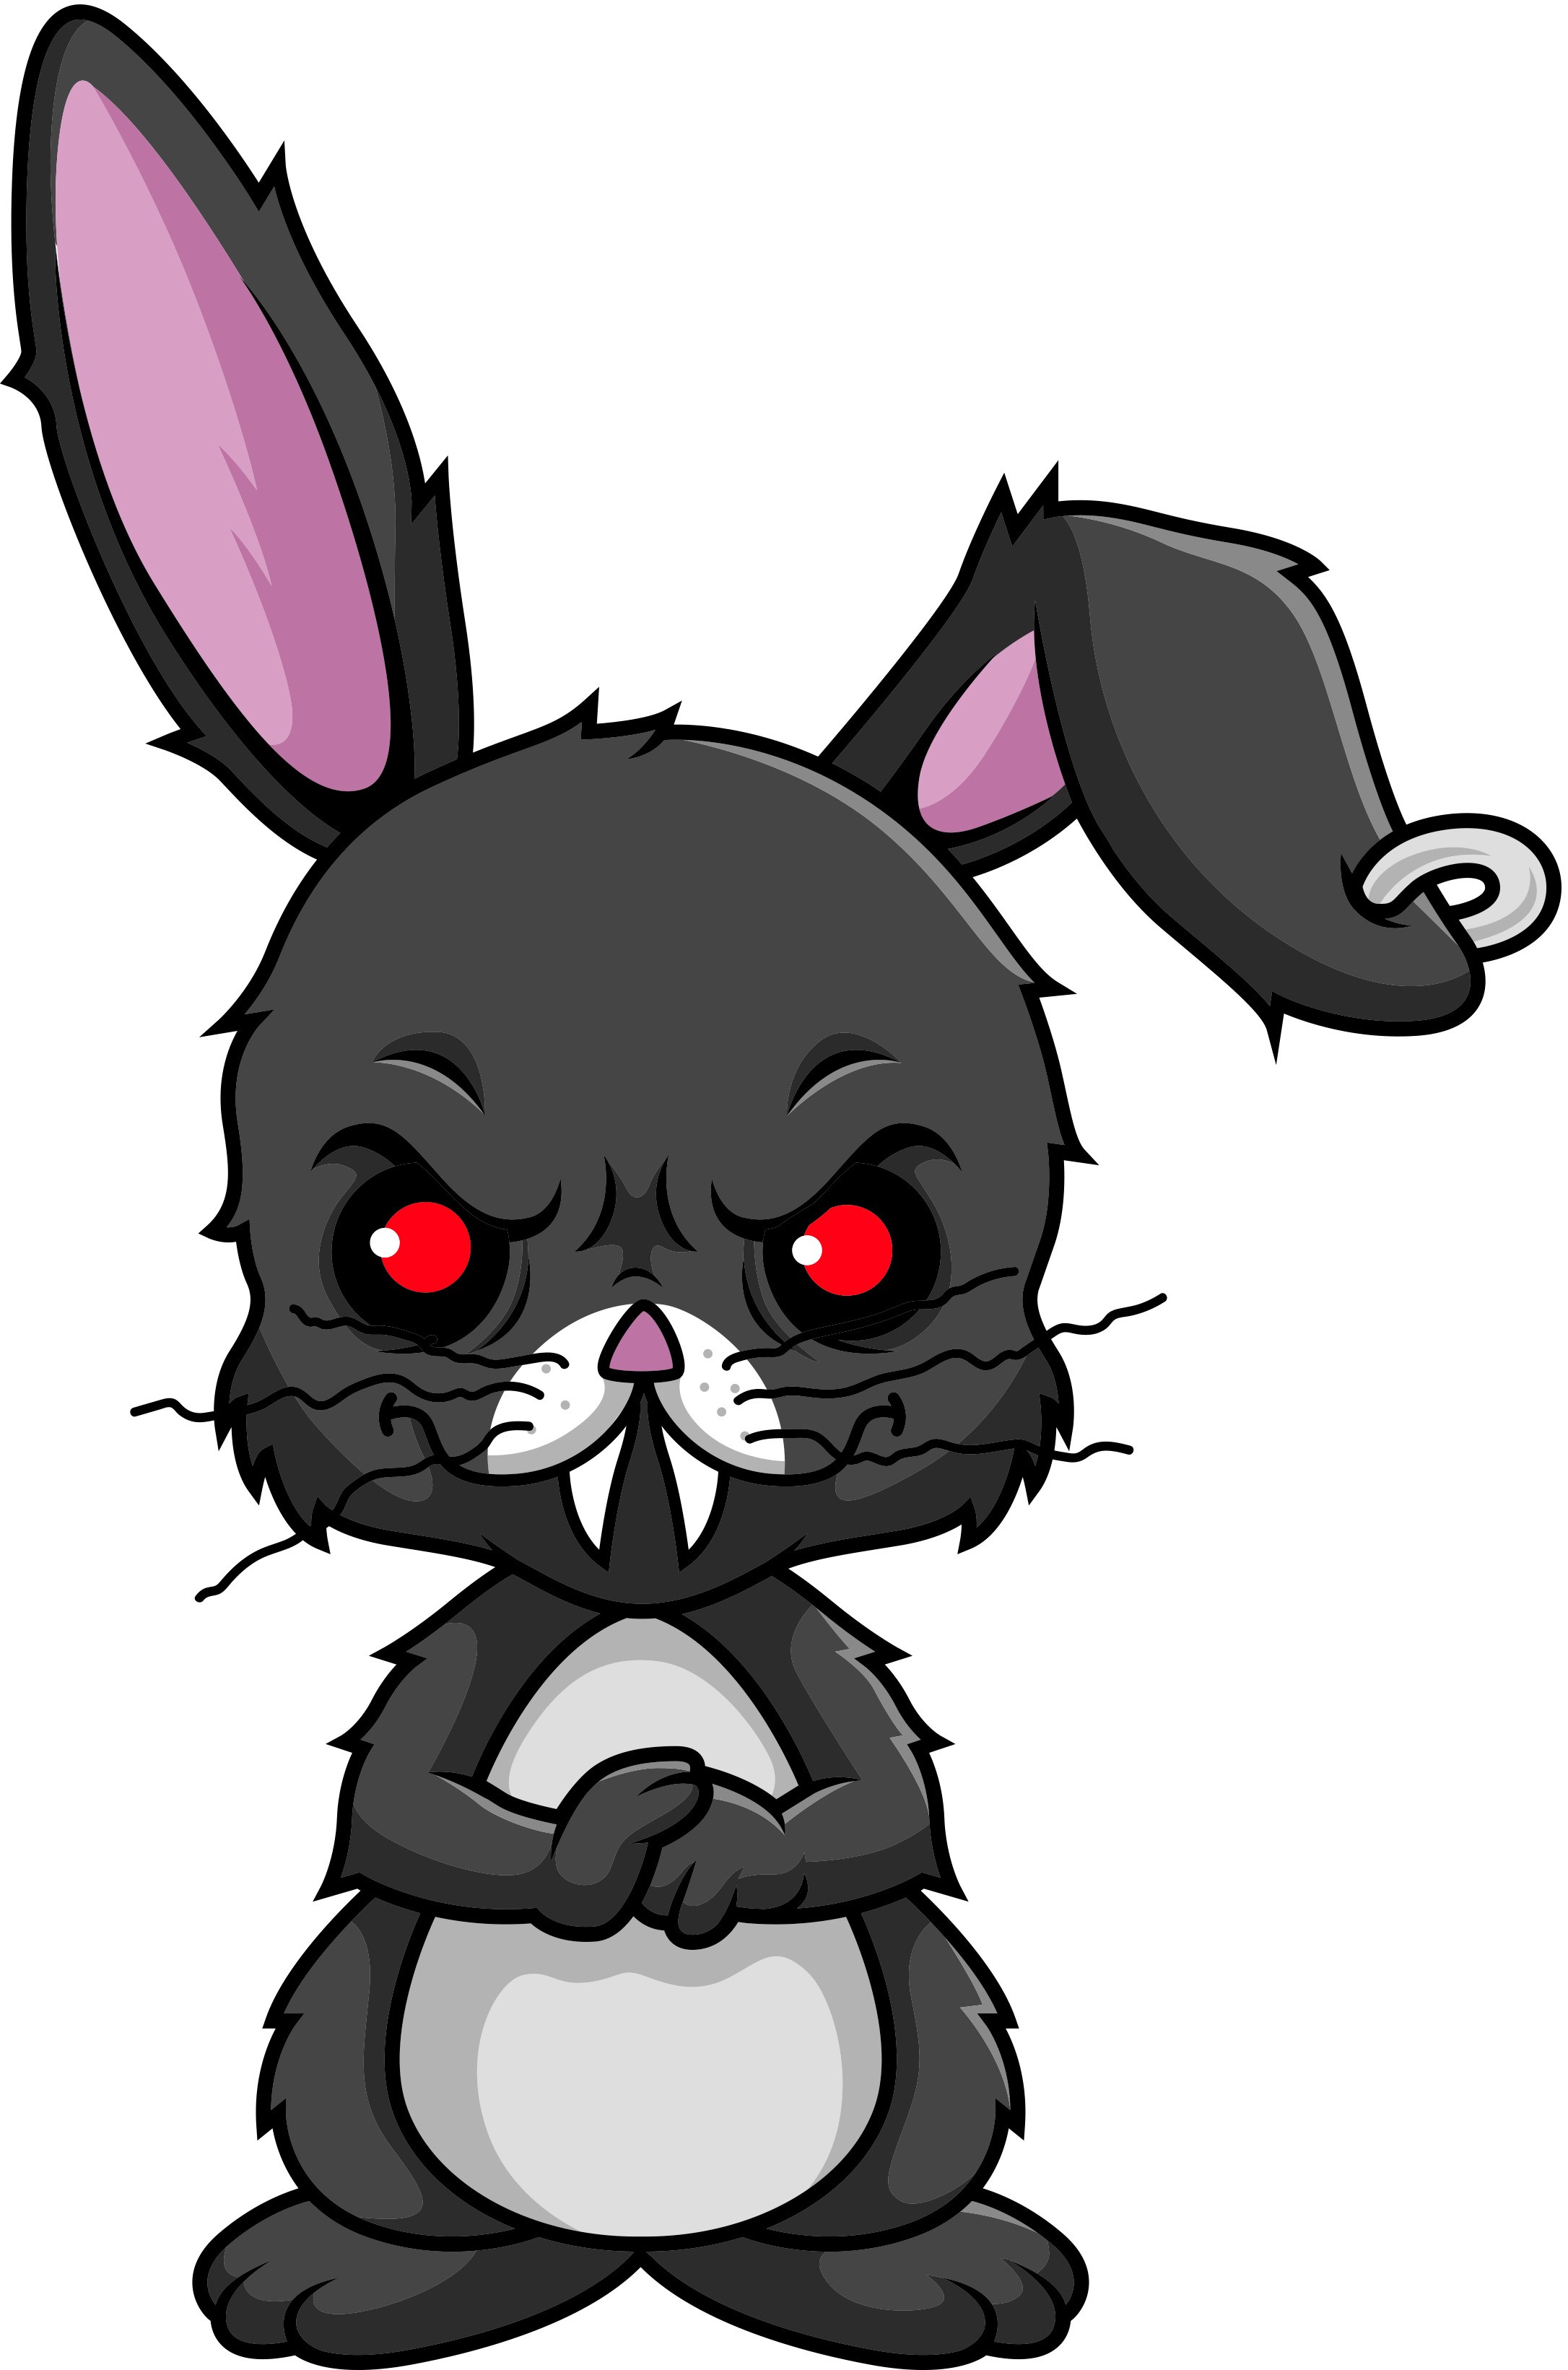 fluffy the evil bunny